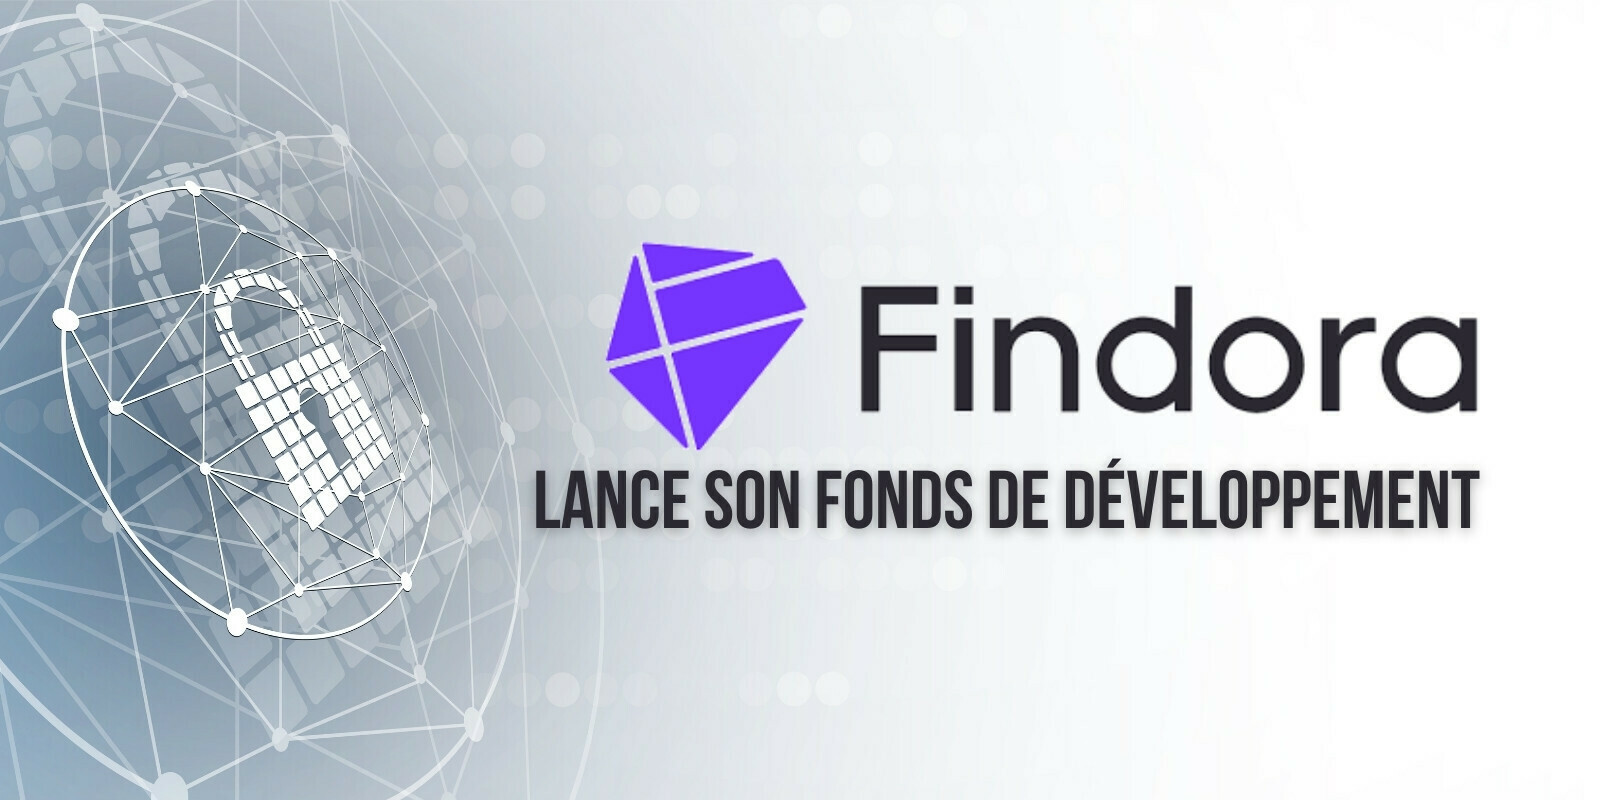 La blockchain Findora (FRA) annonce un fonds de développement de 100 millions de dollars